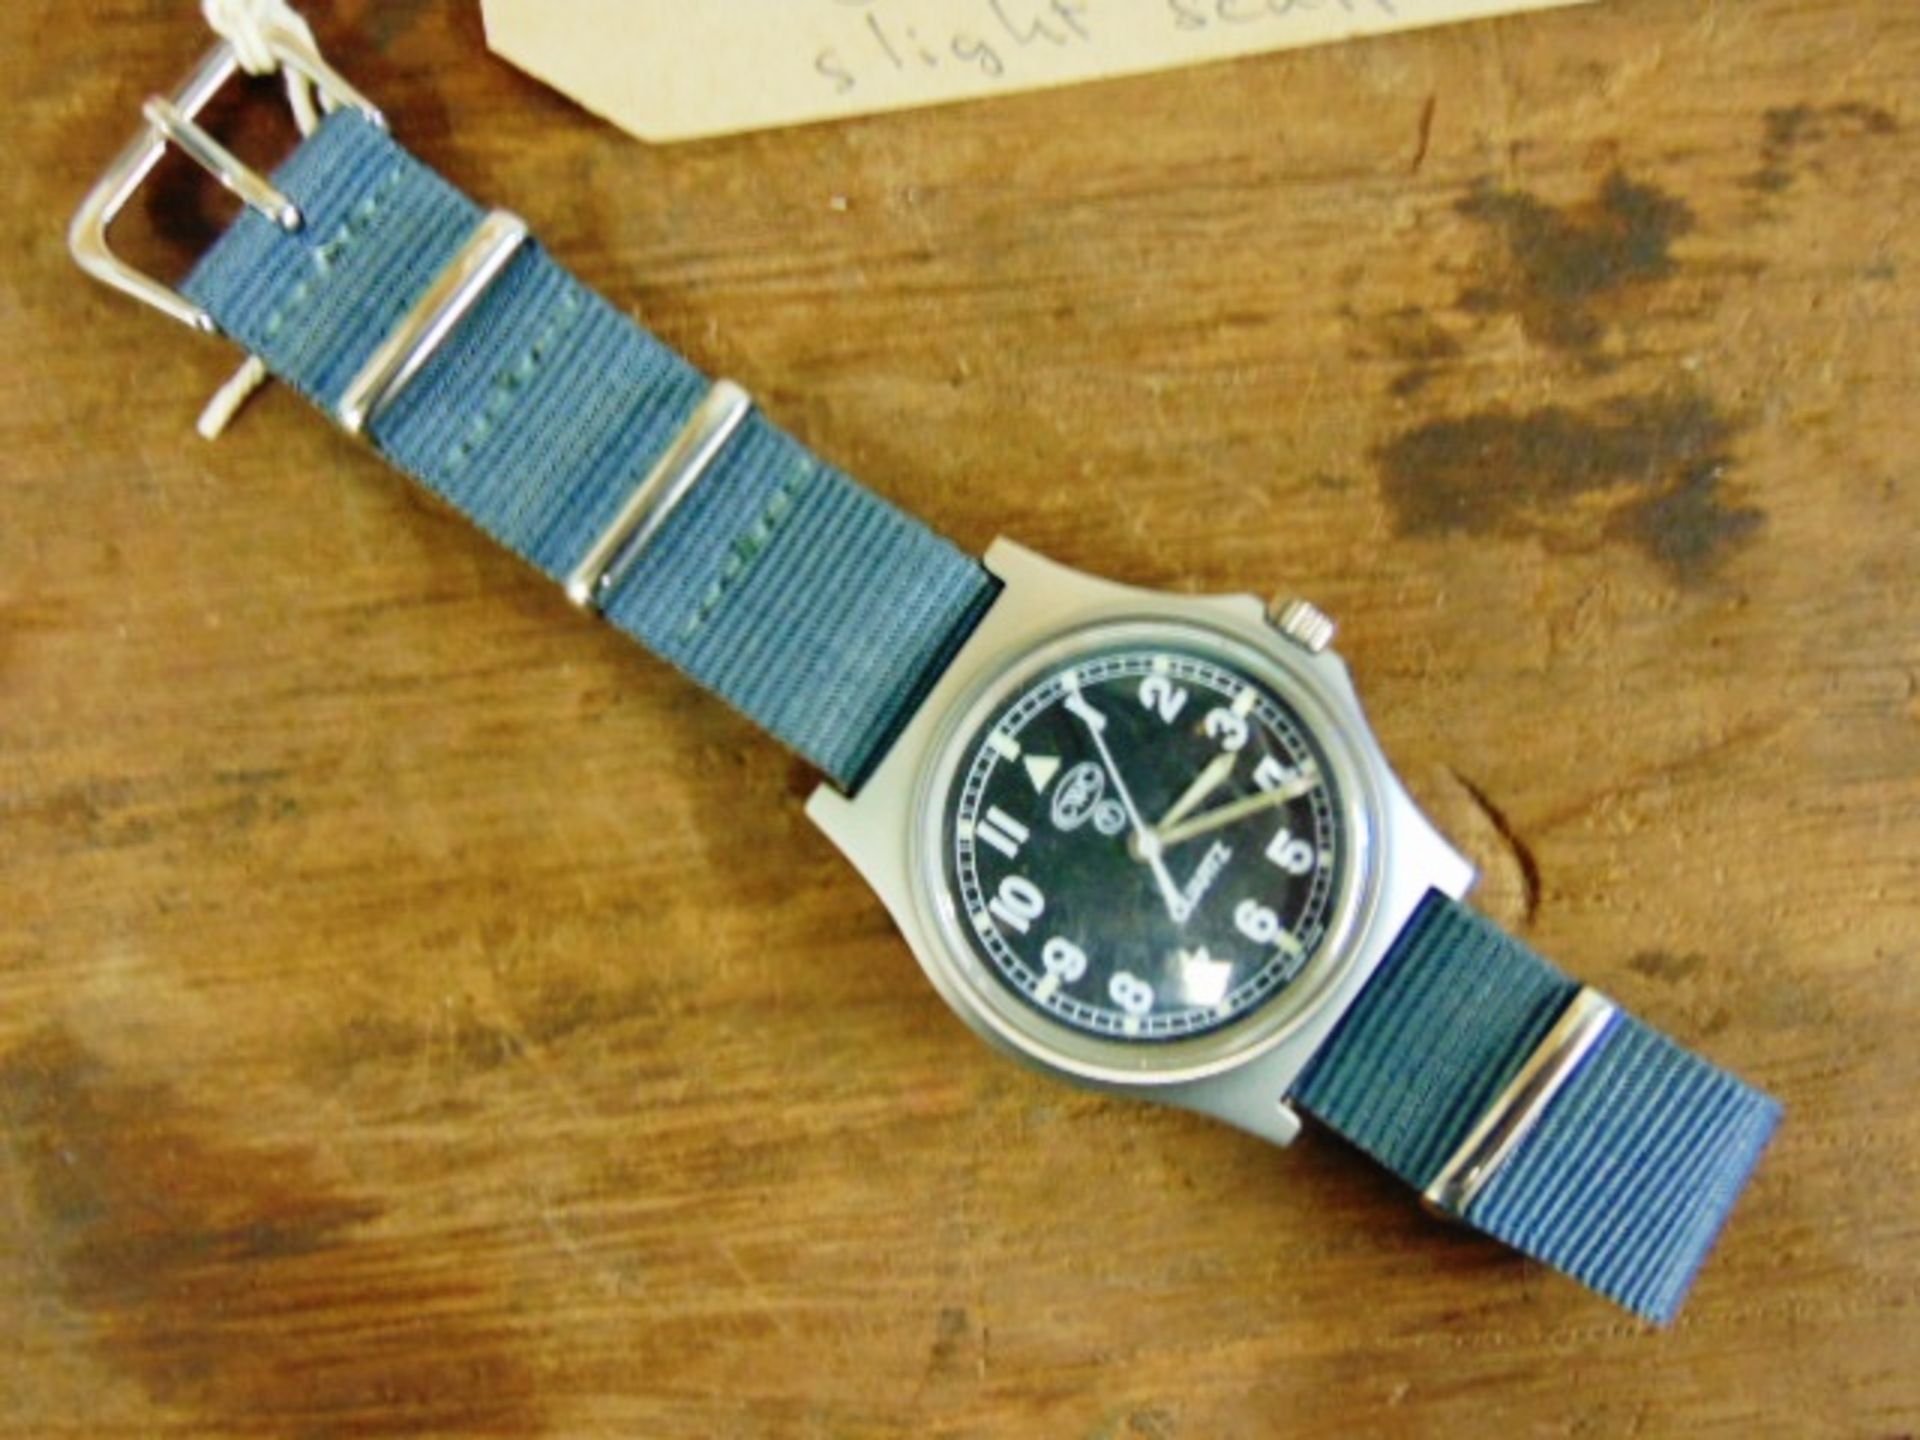 Unissued Genuine British Army, Waterproof CWC quartz wrist watch - Image 3 of 6